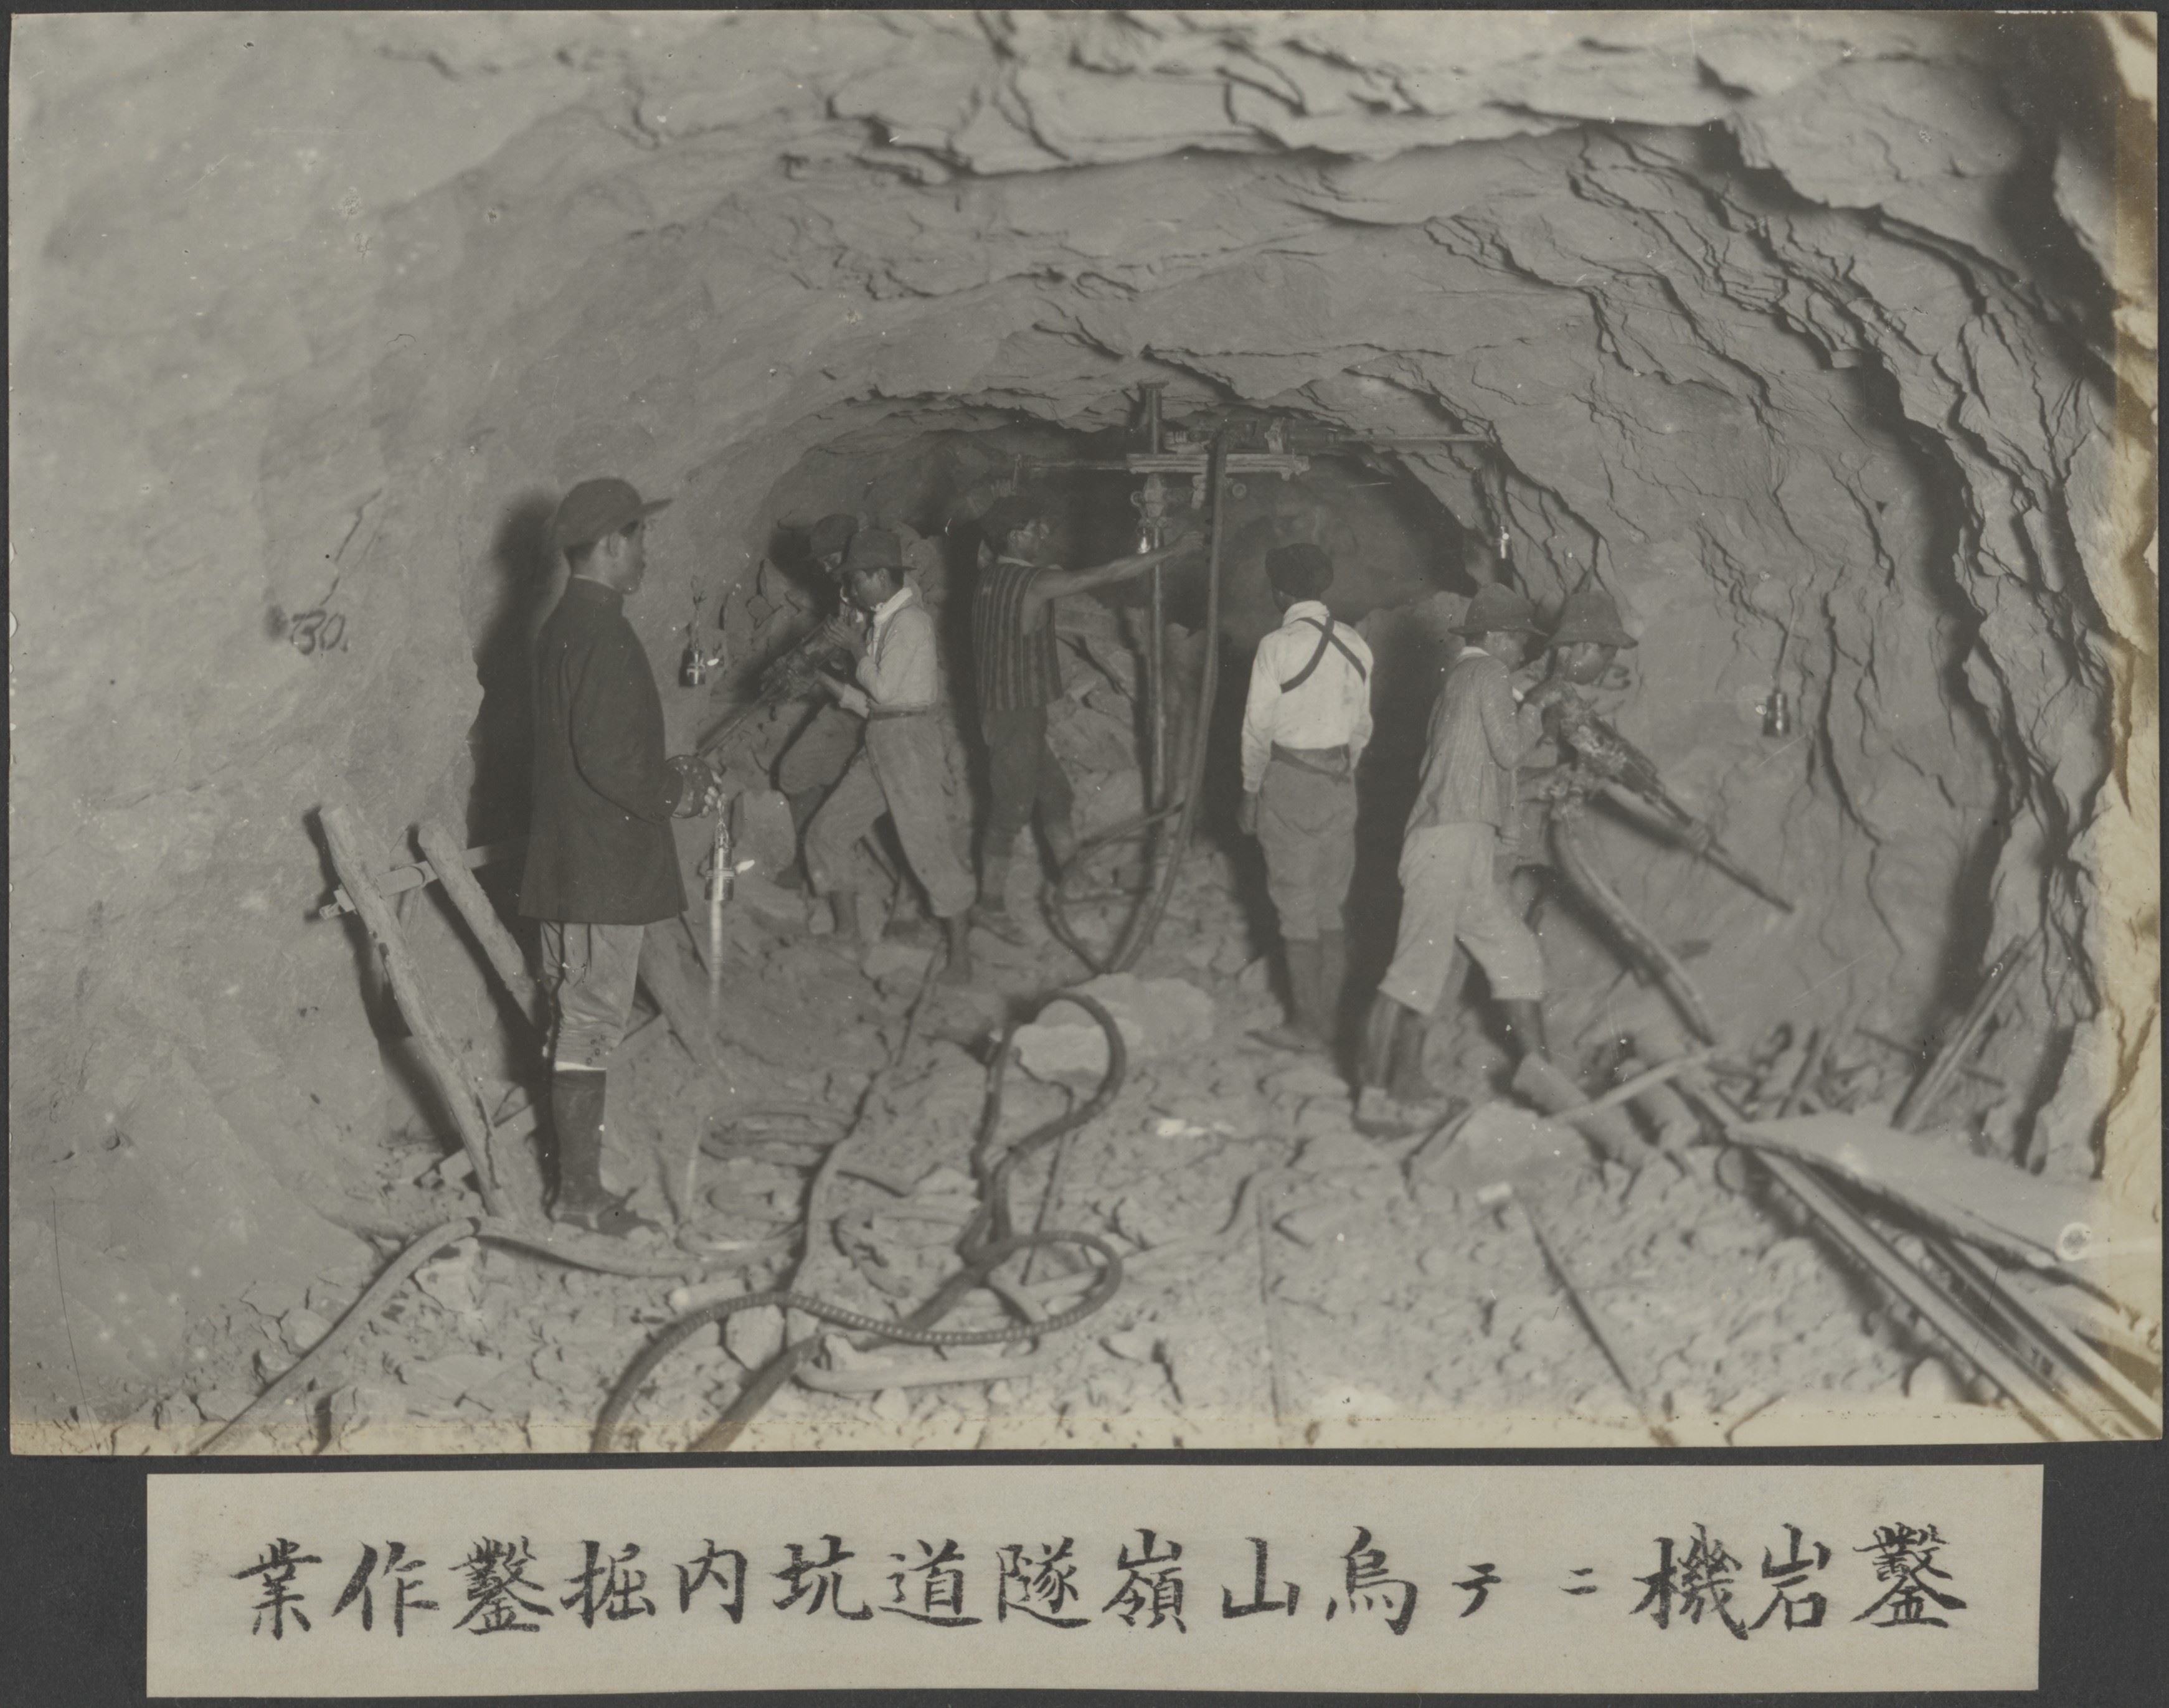 烏山嶺隧道內鑿岩機挖掘作業